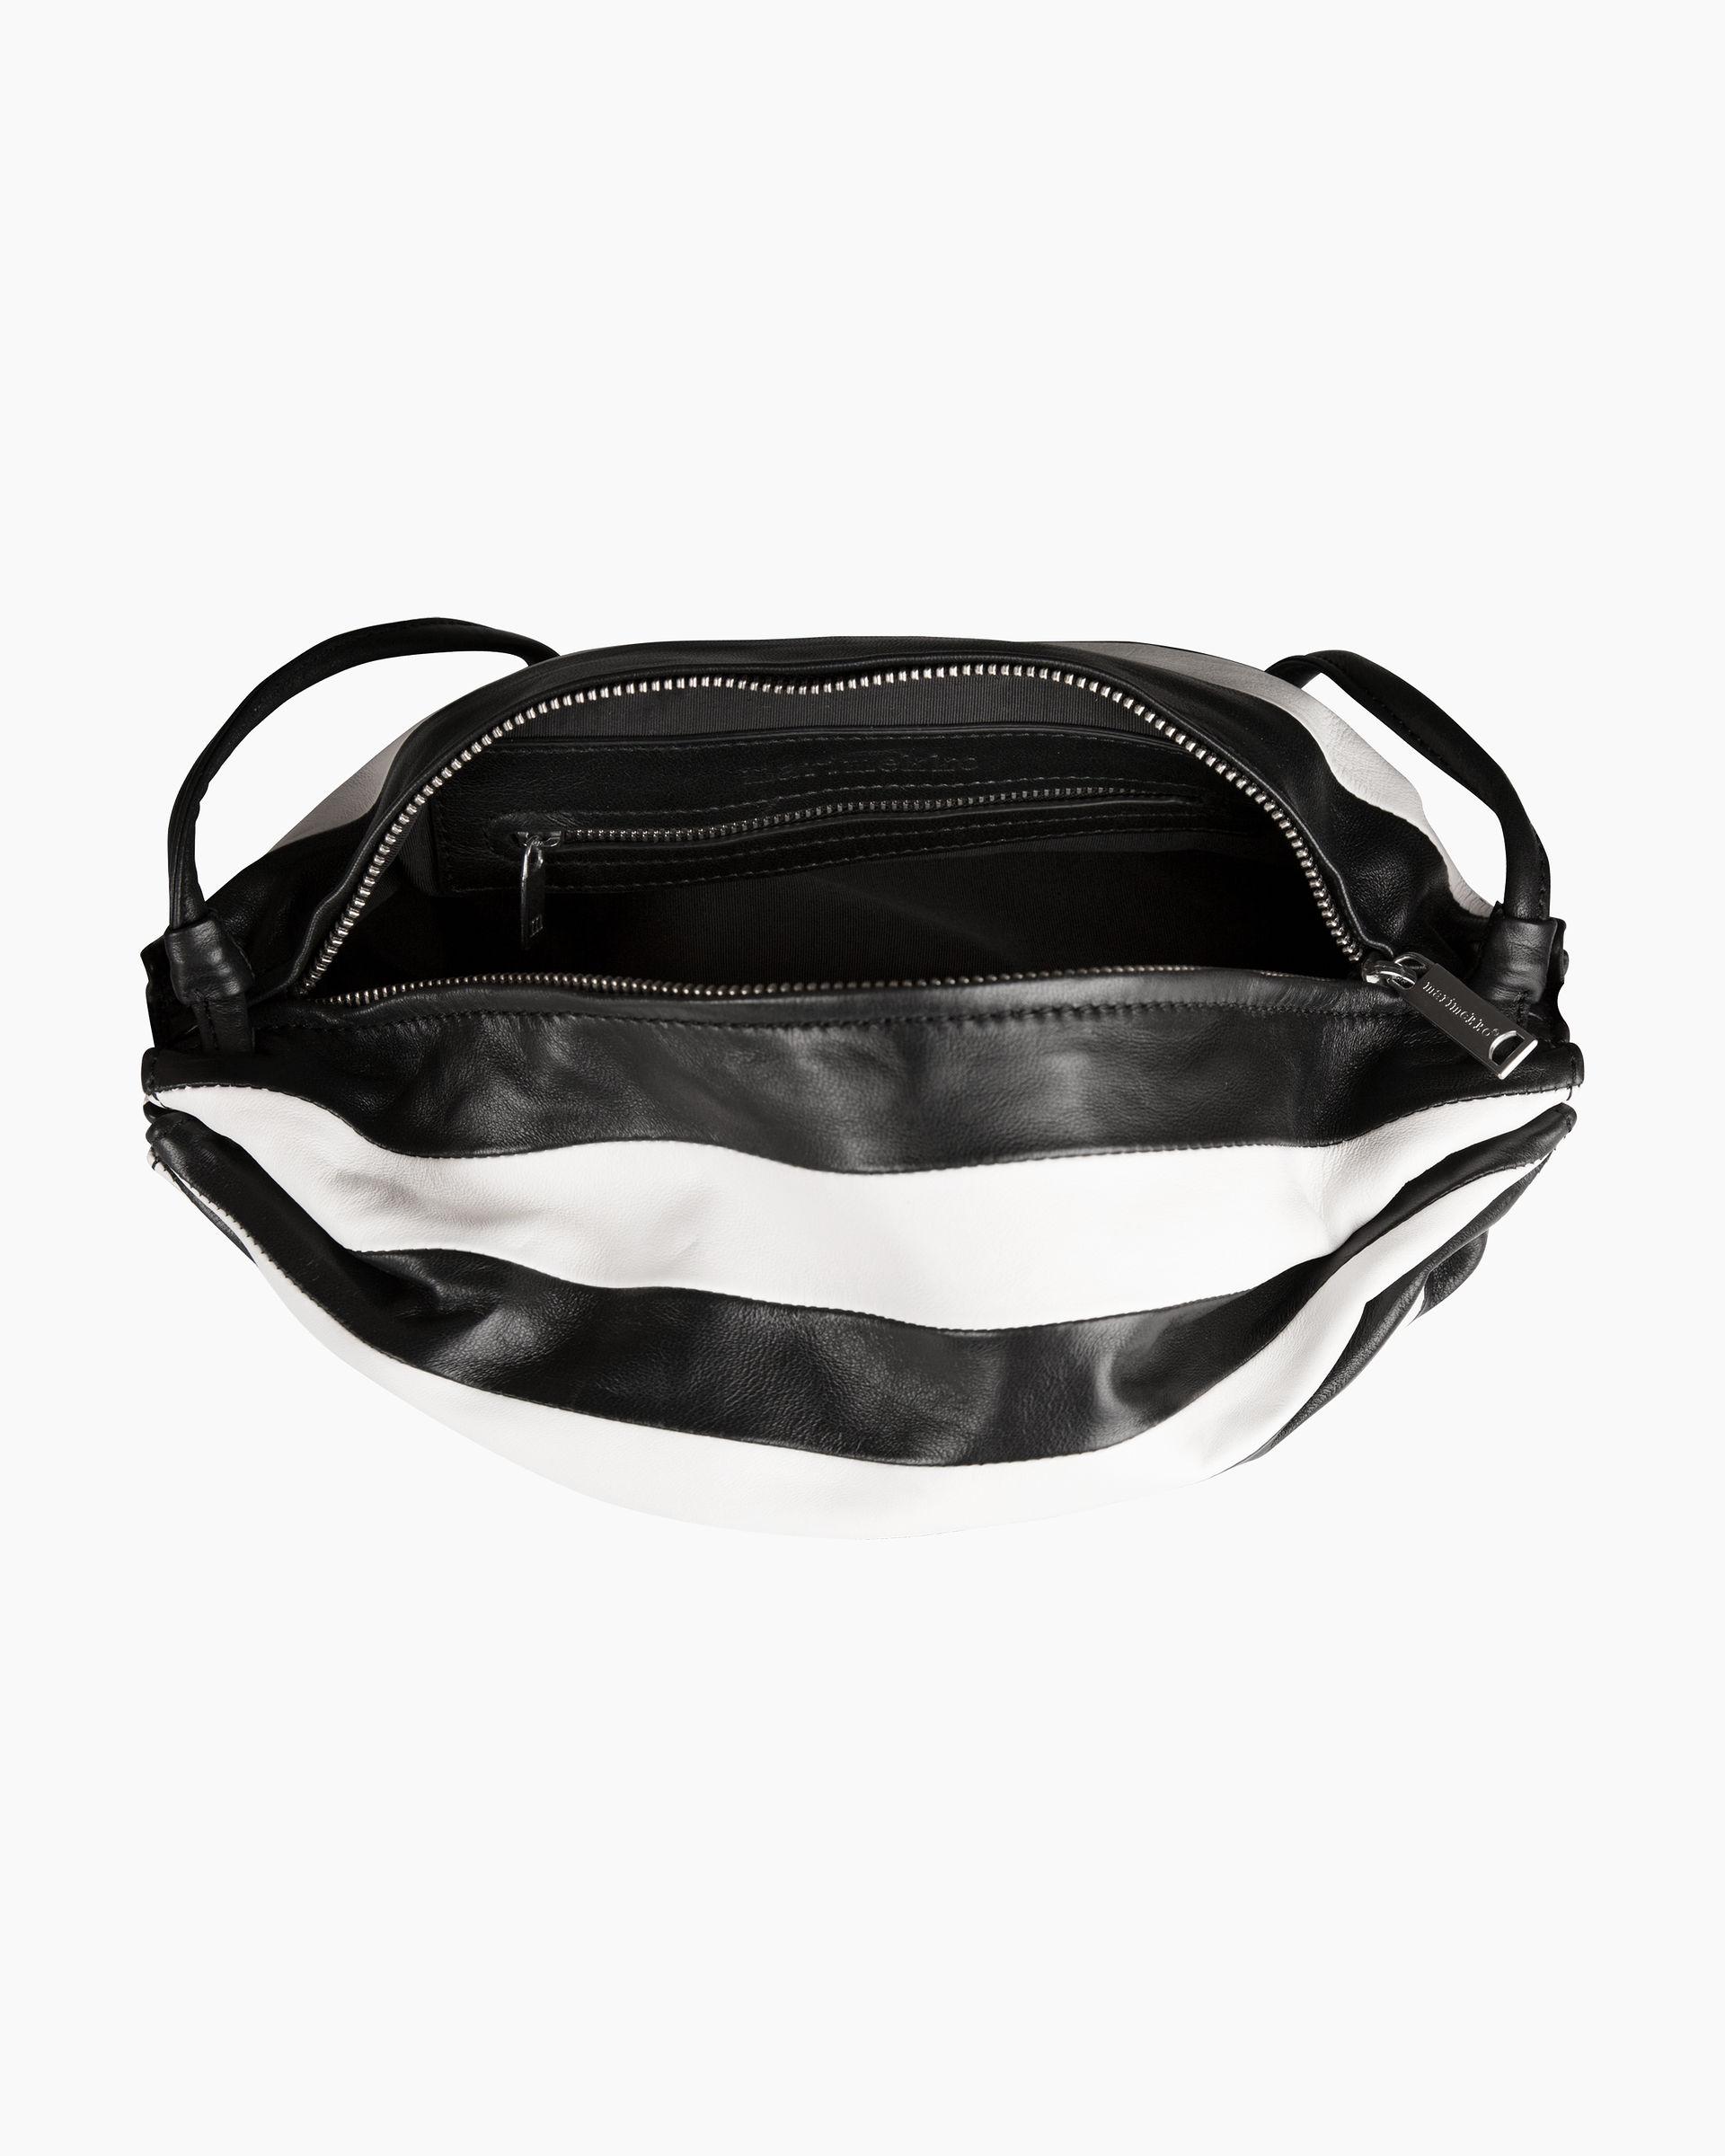 Marimekko Leather Karla Stripe Bag in Black - Lyst